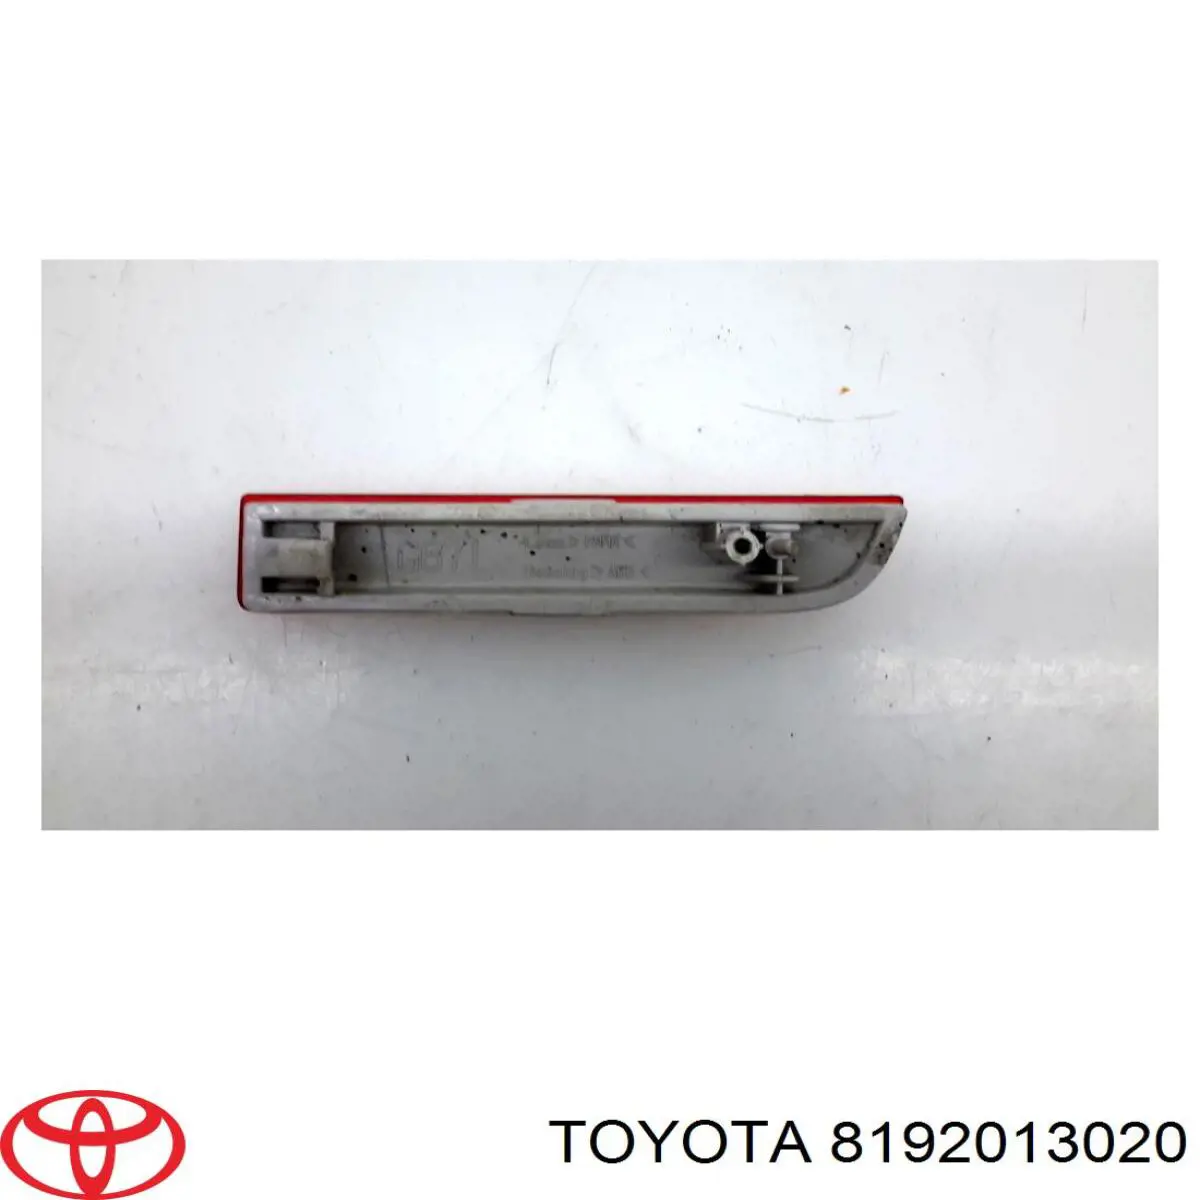 Retrorrefletor (refletor) do pára-choque traseiro esquerdo para Toyota Avensis (T27)